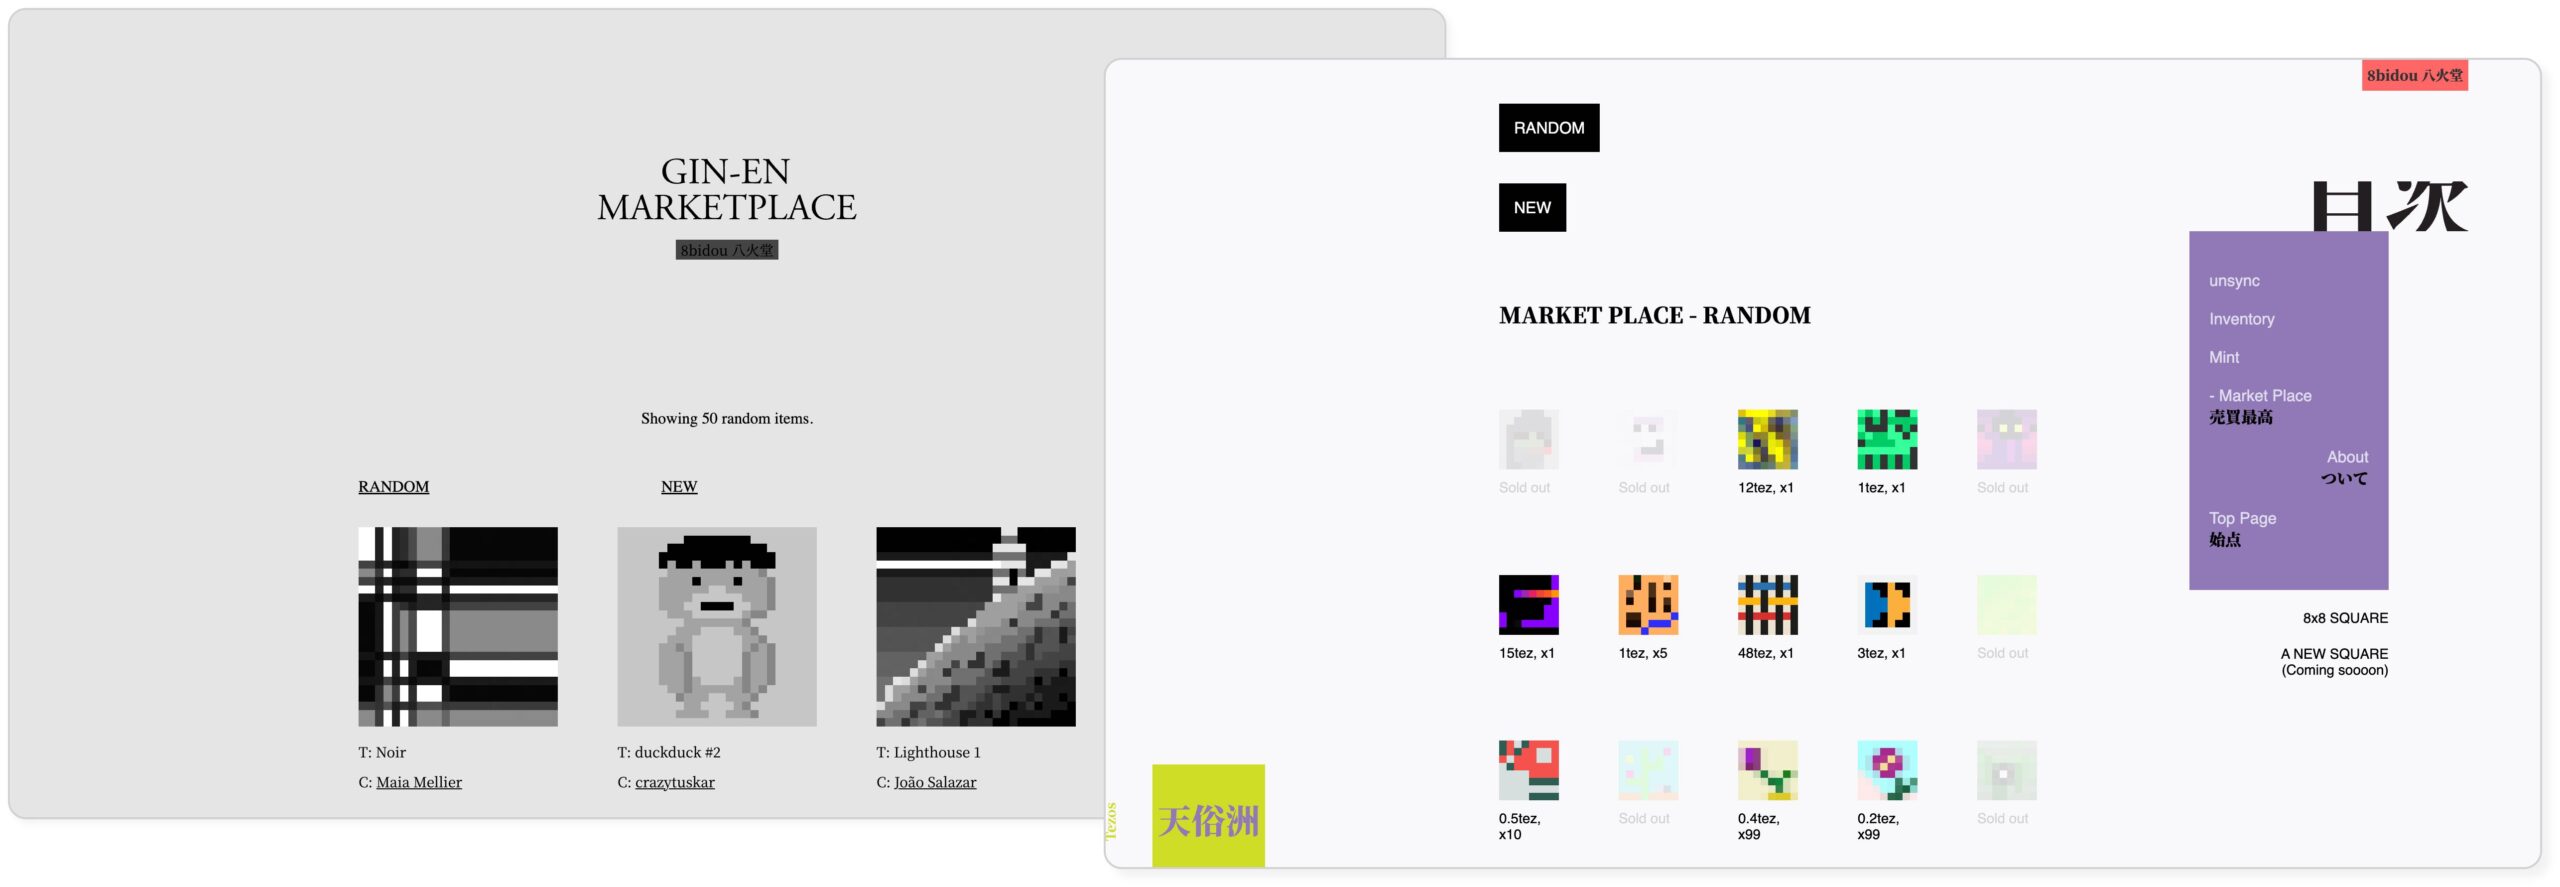 2 screenshots of the 8bidou marketplace